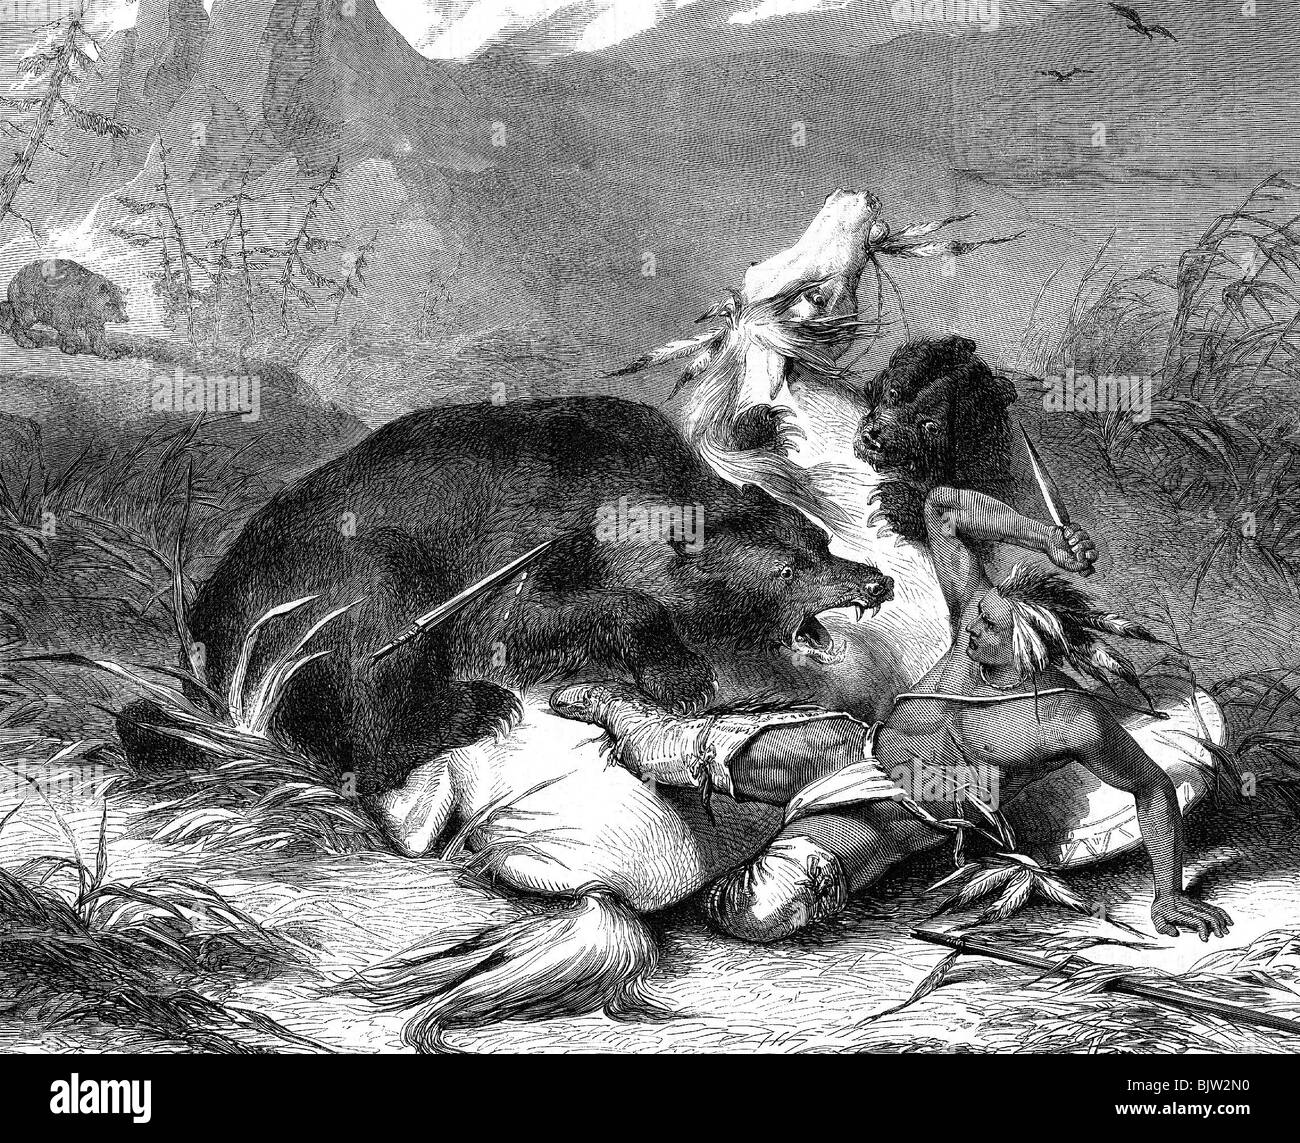 Geografía / viajes, Estados Unidos de América, gente, India americana luchando con un oso grizzly, grabado de madera, 1860, Foto de stock